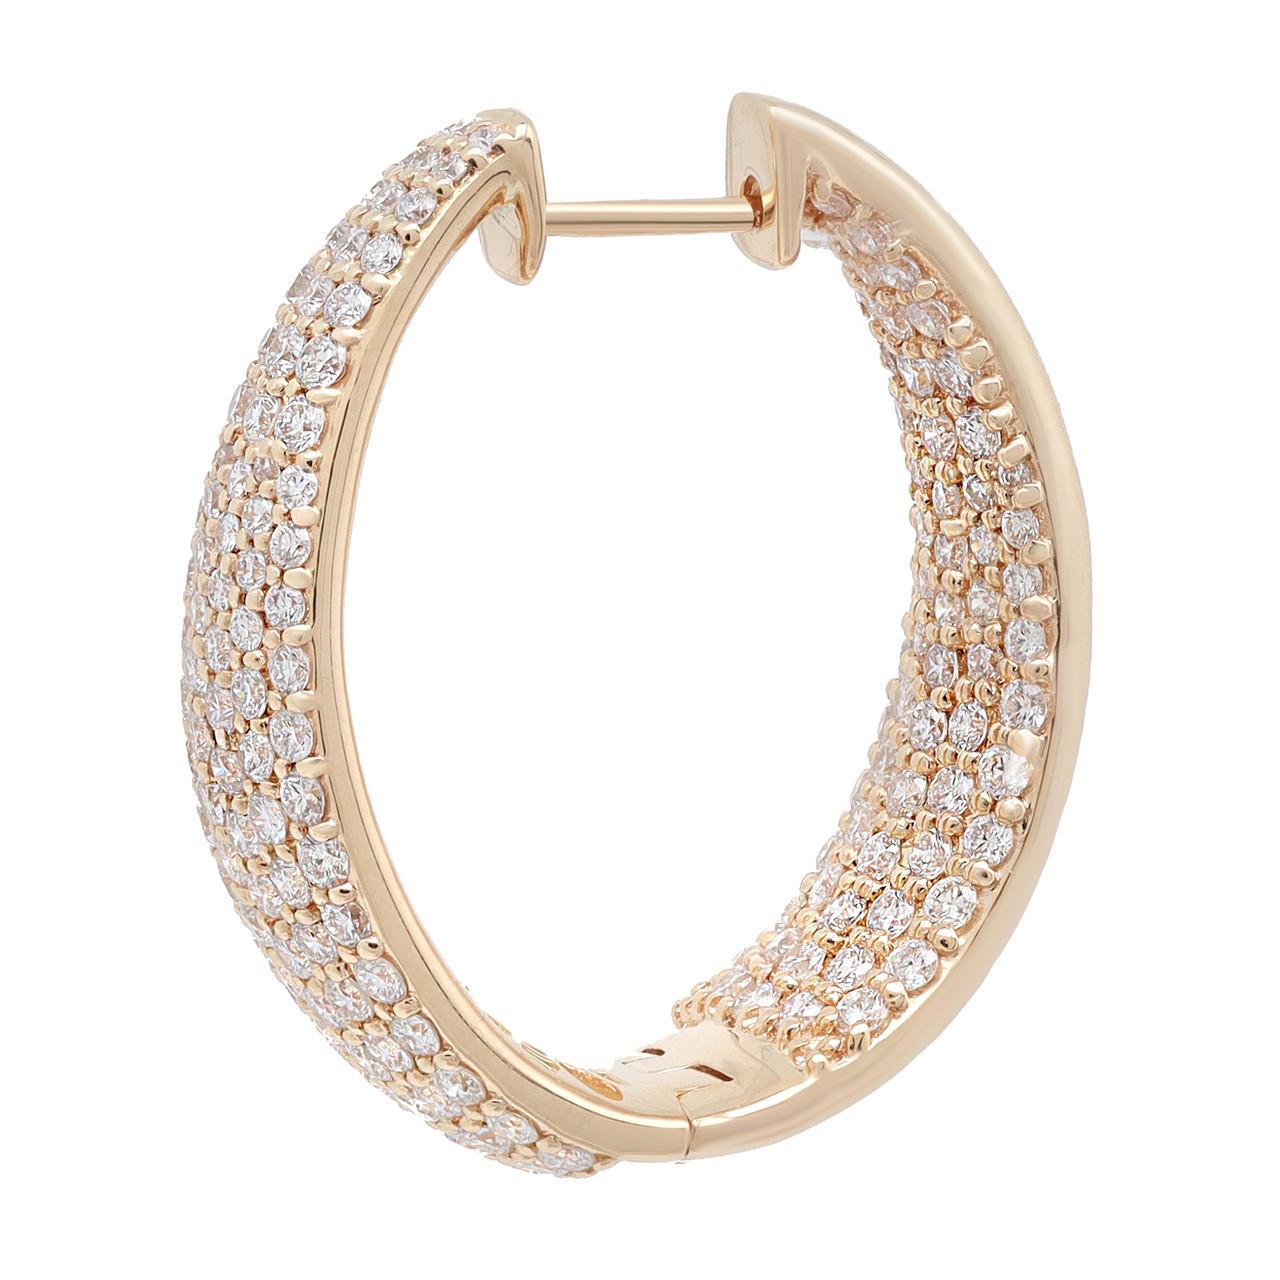 Opulenz und Raffinesse versprühen diese atemberaubenden großen, runden Diamant-Ohrringe aus 18 Karat Gelbgold. Diese Ohrringe strahlen mit ihrem prächtigen Design und den bezaubernden Diamanten eine warme und luxuriöse Ausstrahlung aus. Jeder Reif